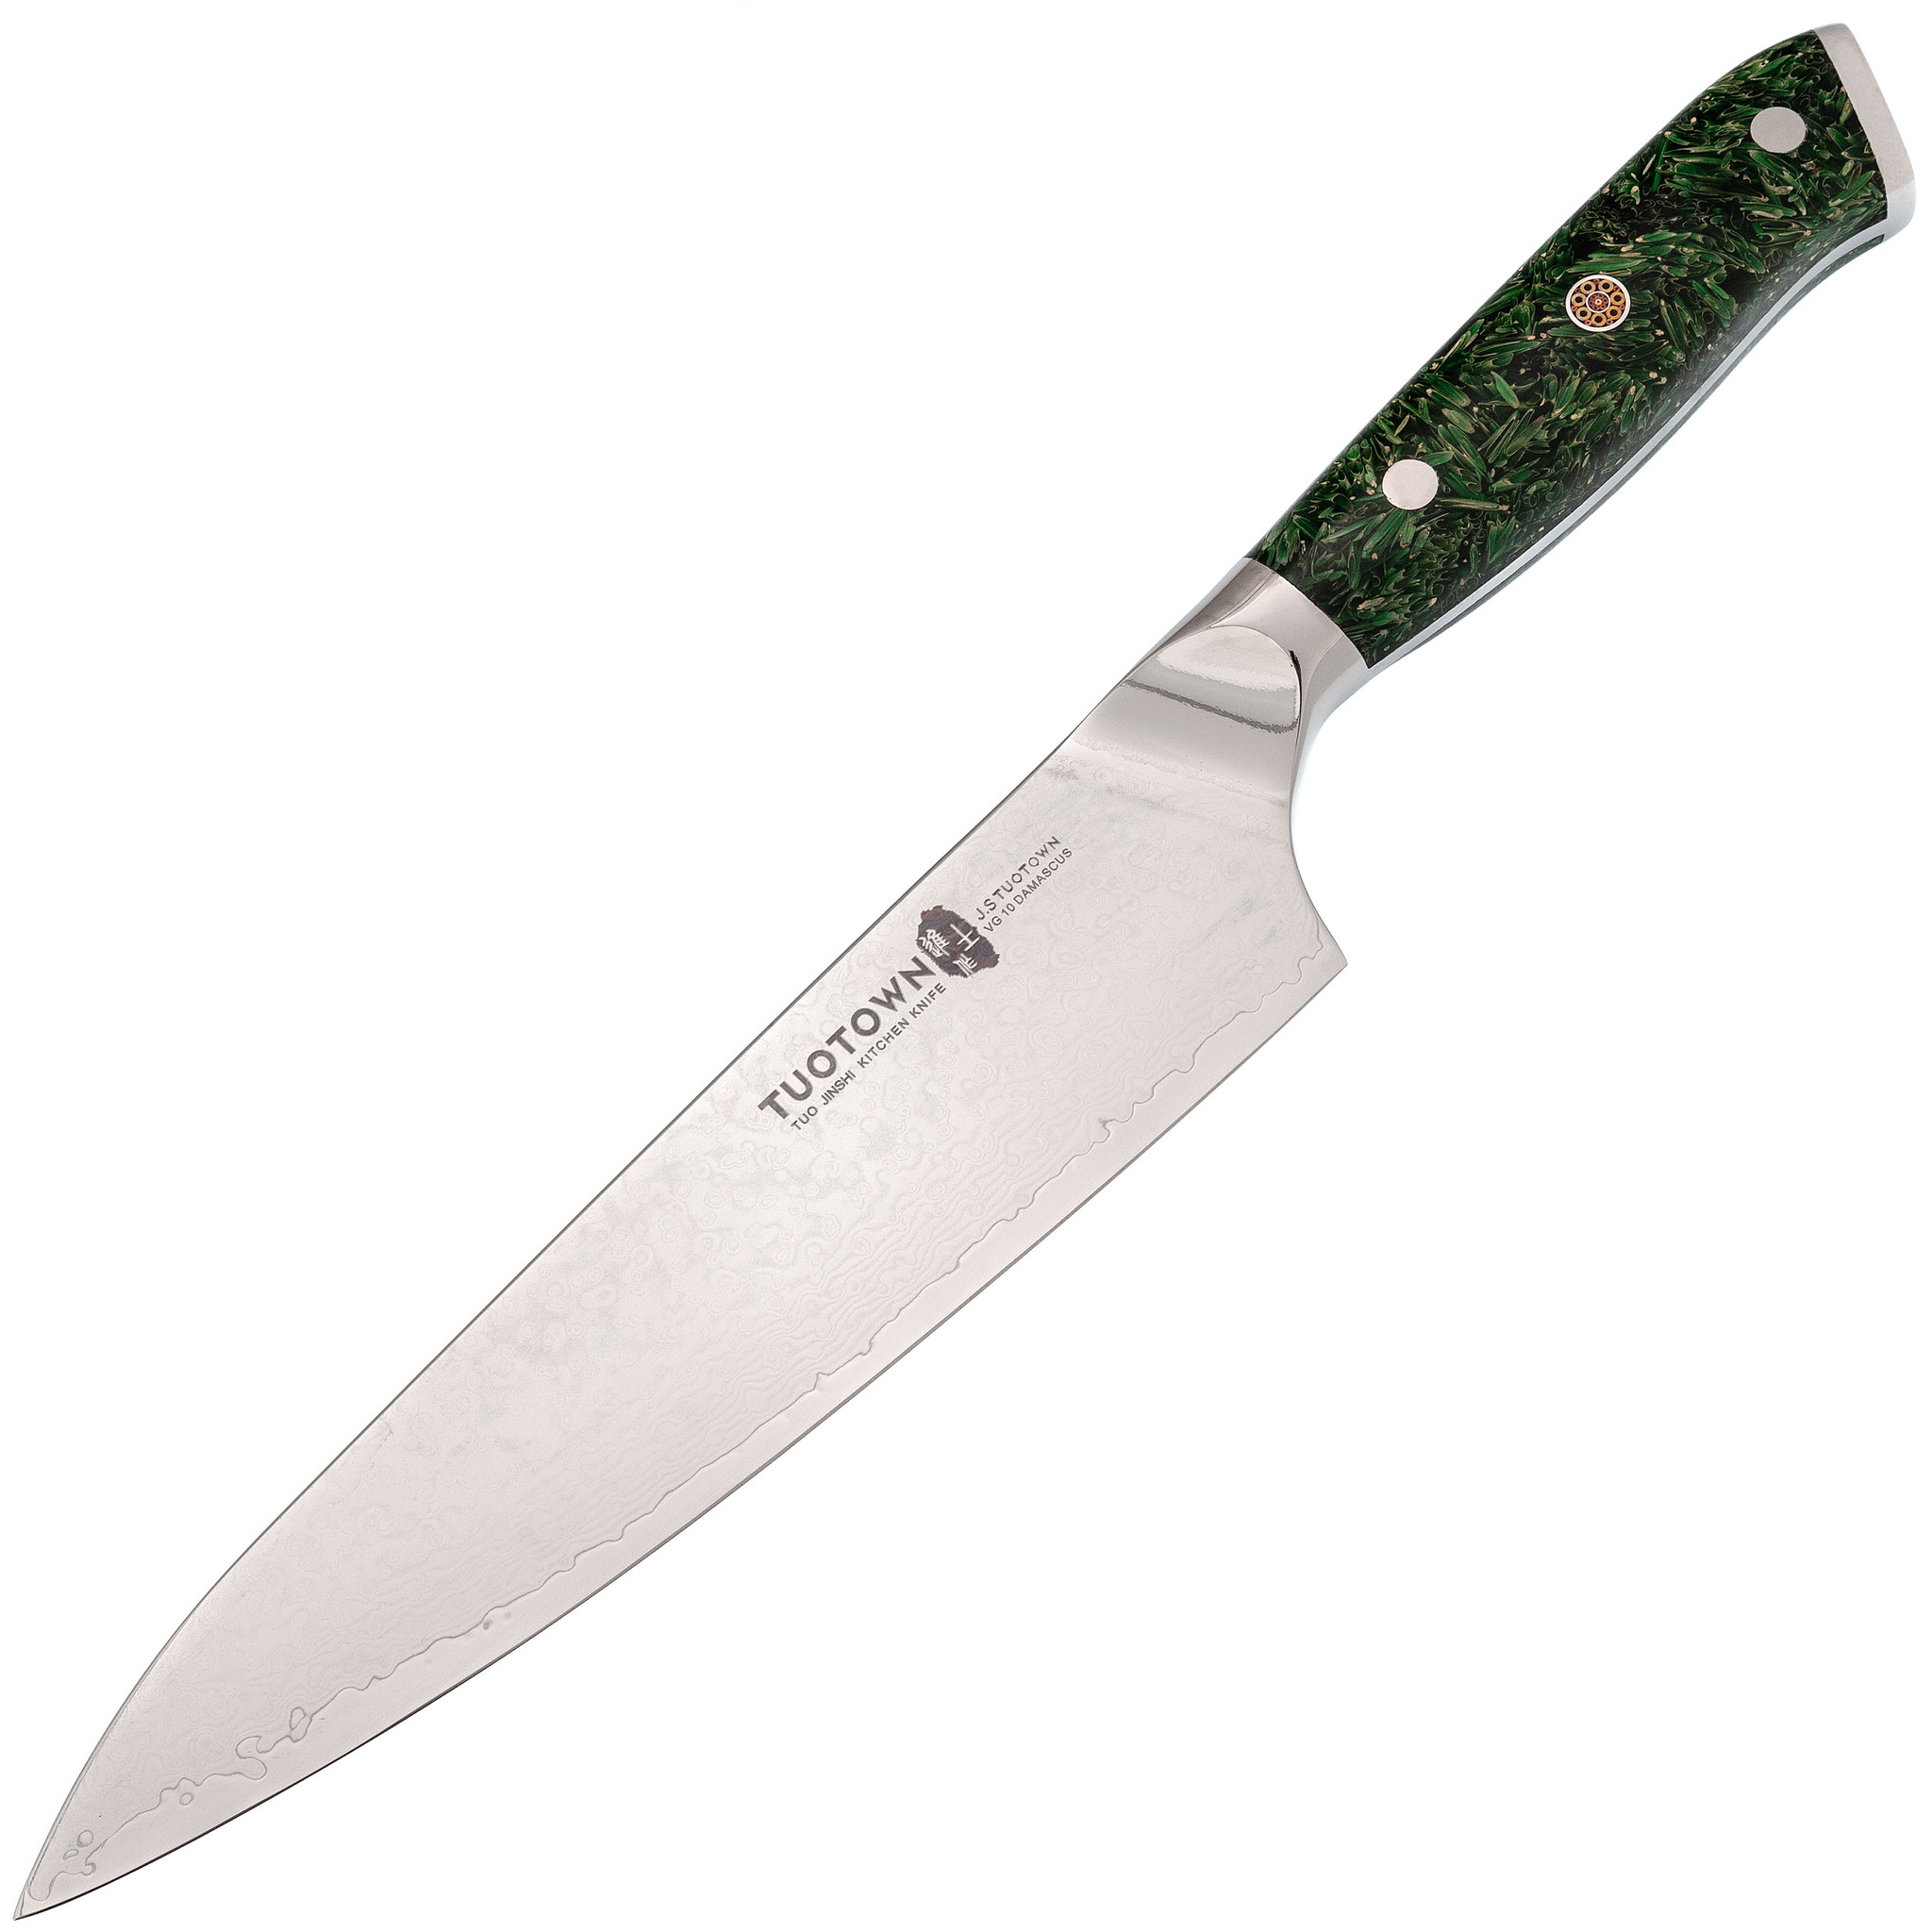 Кухонный нож Шеф Tuotown, сталь VG10, обкладка Damascus, рукоять акрил, зеленый - фото 1